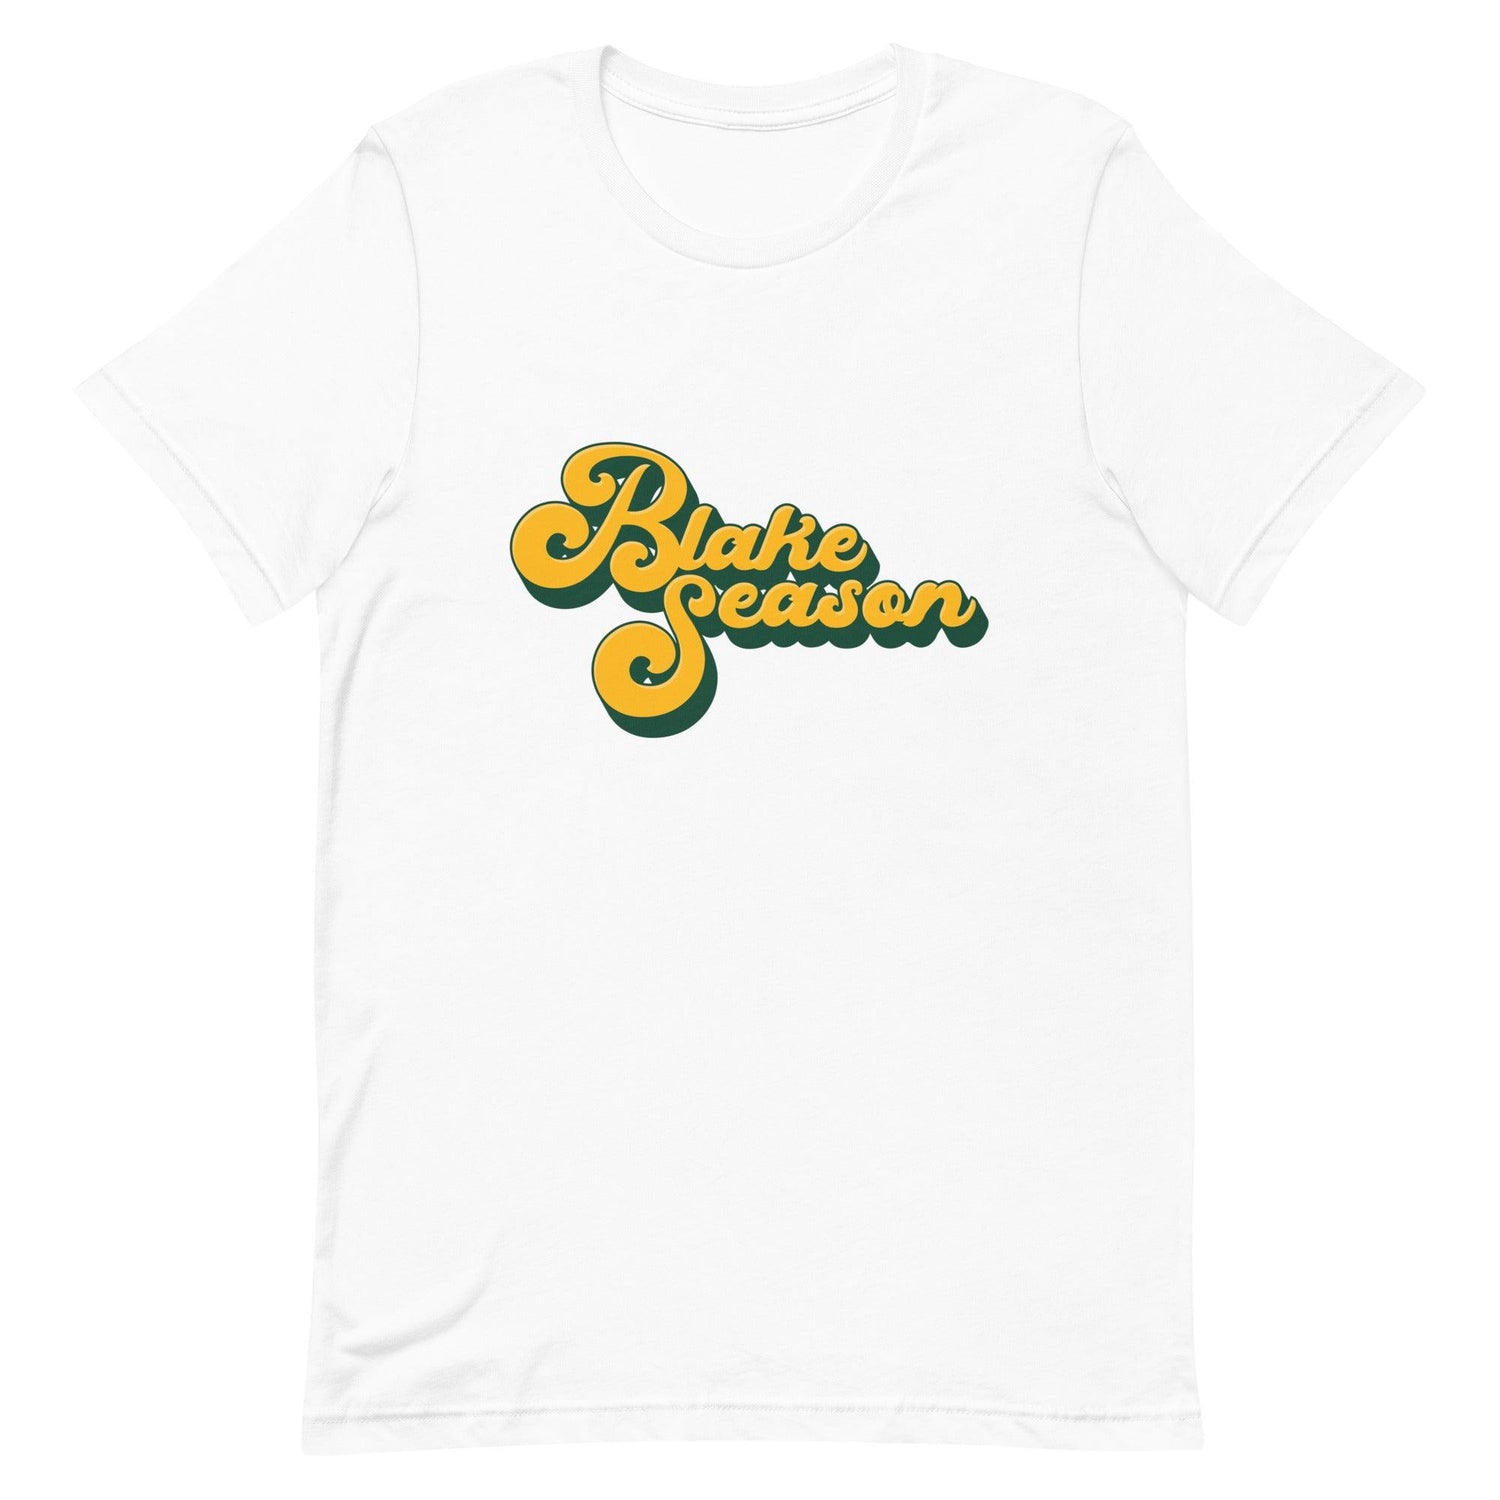 Blake Shapen “Blake Season” t-shirt - Fan Arch